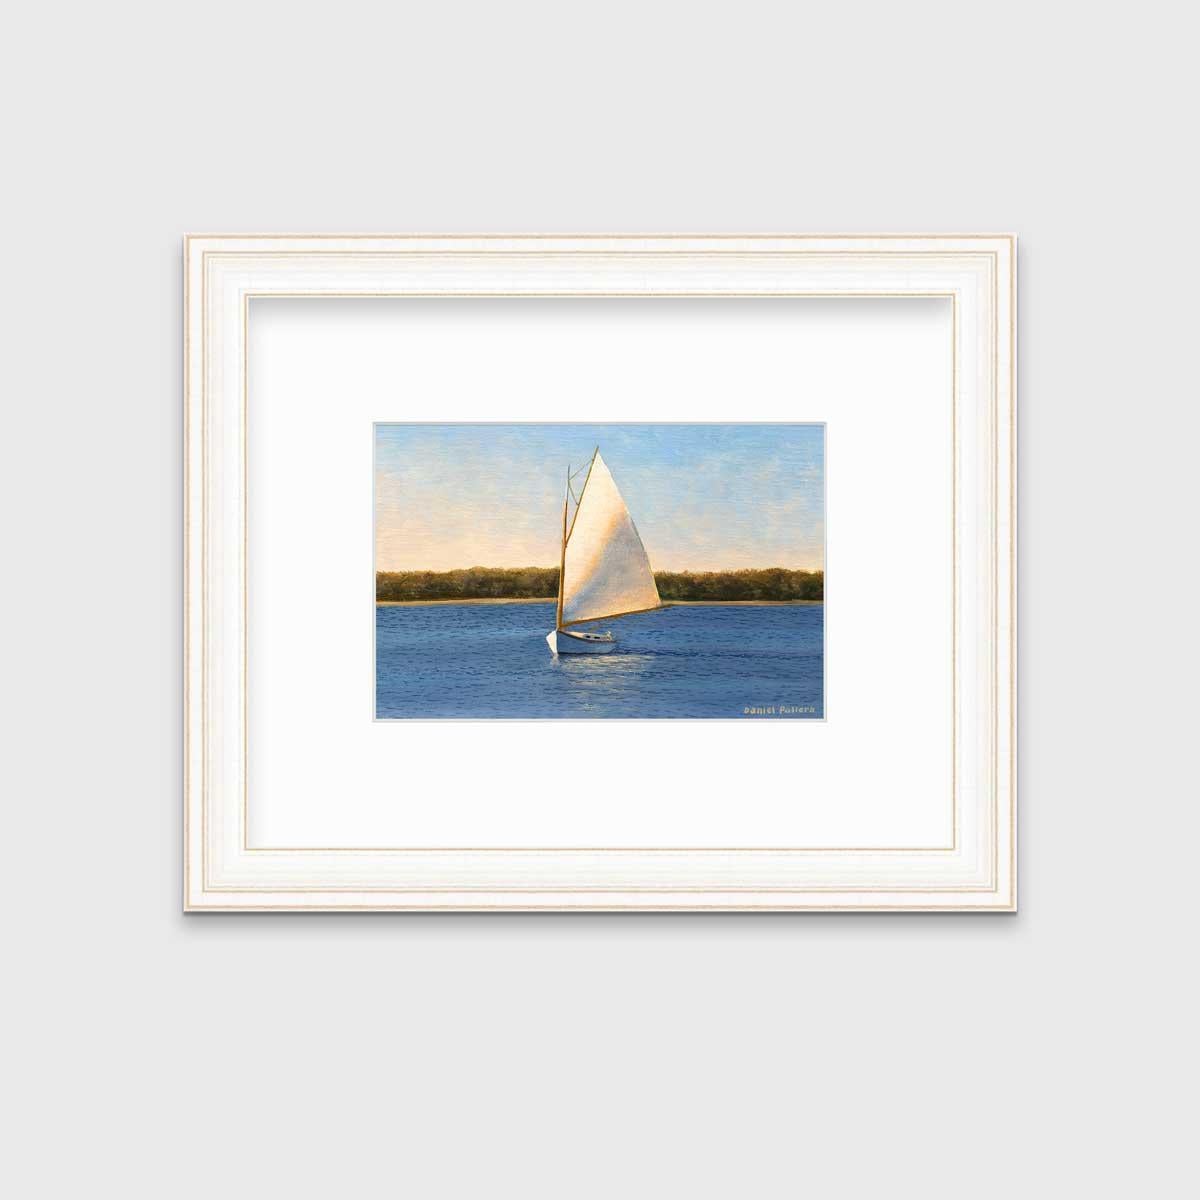 Dieser Druck in limitierter Auflage von Daniel Pollera zeigt ein kleines Segelboot mit einem weißen Verkauf, das entlang einer Küstenlinie mit grünem Laub im Hintergrund segelt. Die Sonne scheint von der linken Seite der Komposition, so dass der